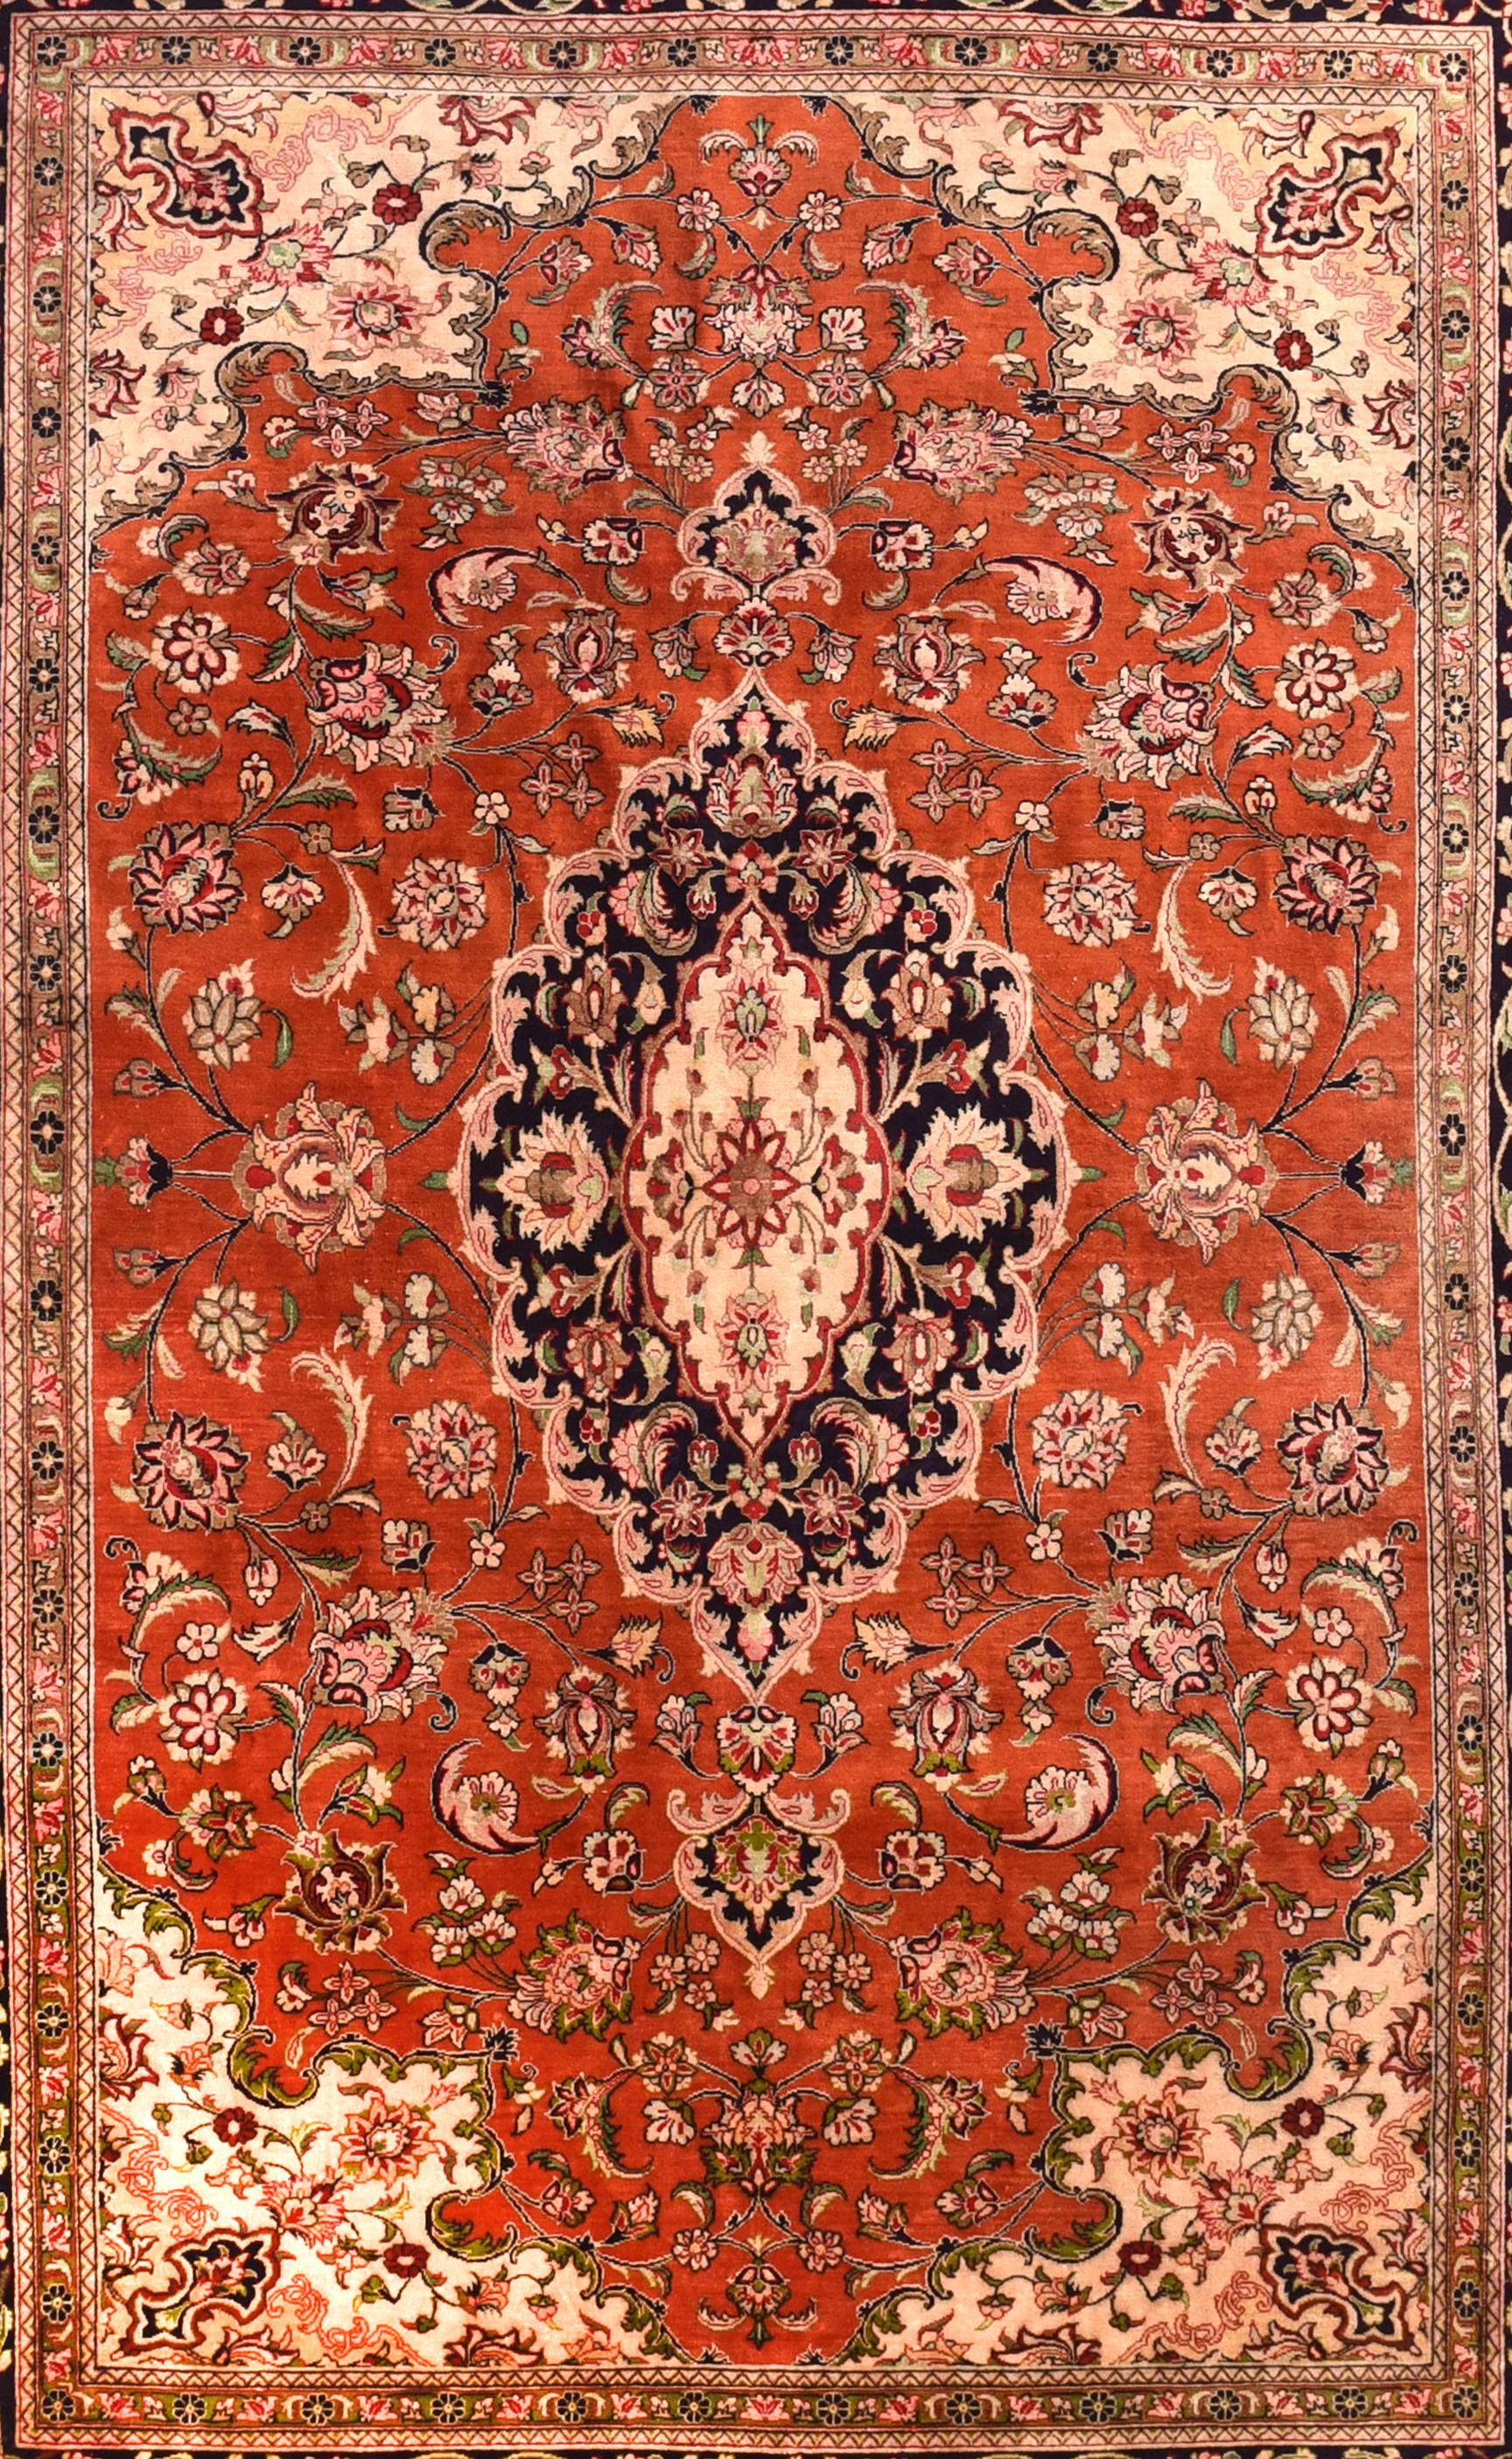 Qom-Teppiche (oder Qum, Ghom, Ghum) werden in der Provinz Qom im Iran, etwa 100 km südlich von Teheran, hergestellt. Obwohl die Teppichweberei in Qom erst in den letzten 100 Jahren zu einem bedeutenden Wirtschaftszweig geworden ist, sind die